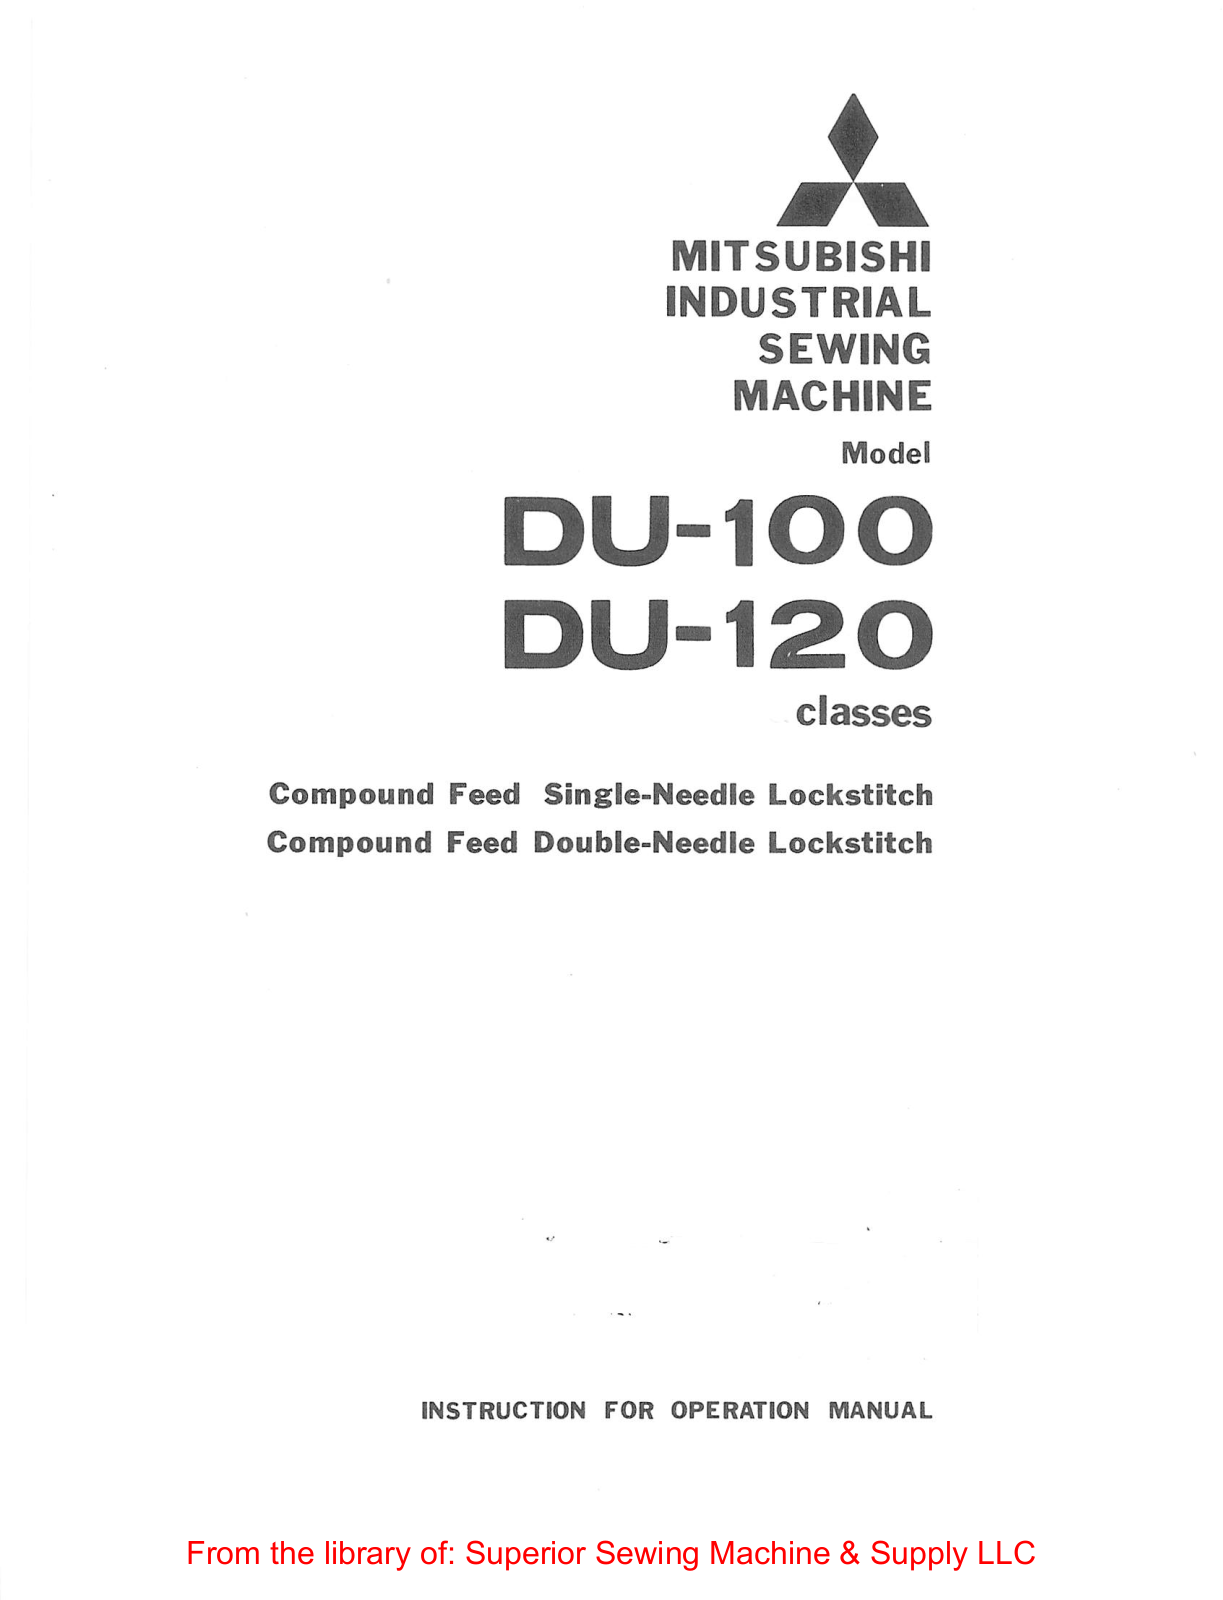 Mitsubishi DU-100, DU-120 Instruction Manual